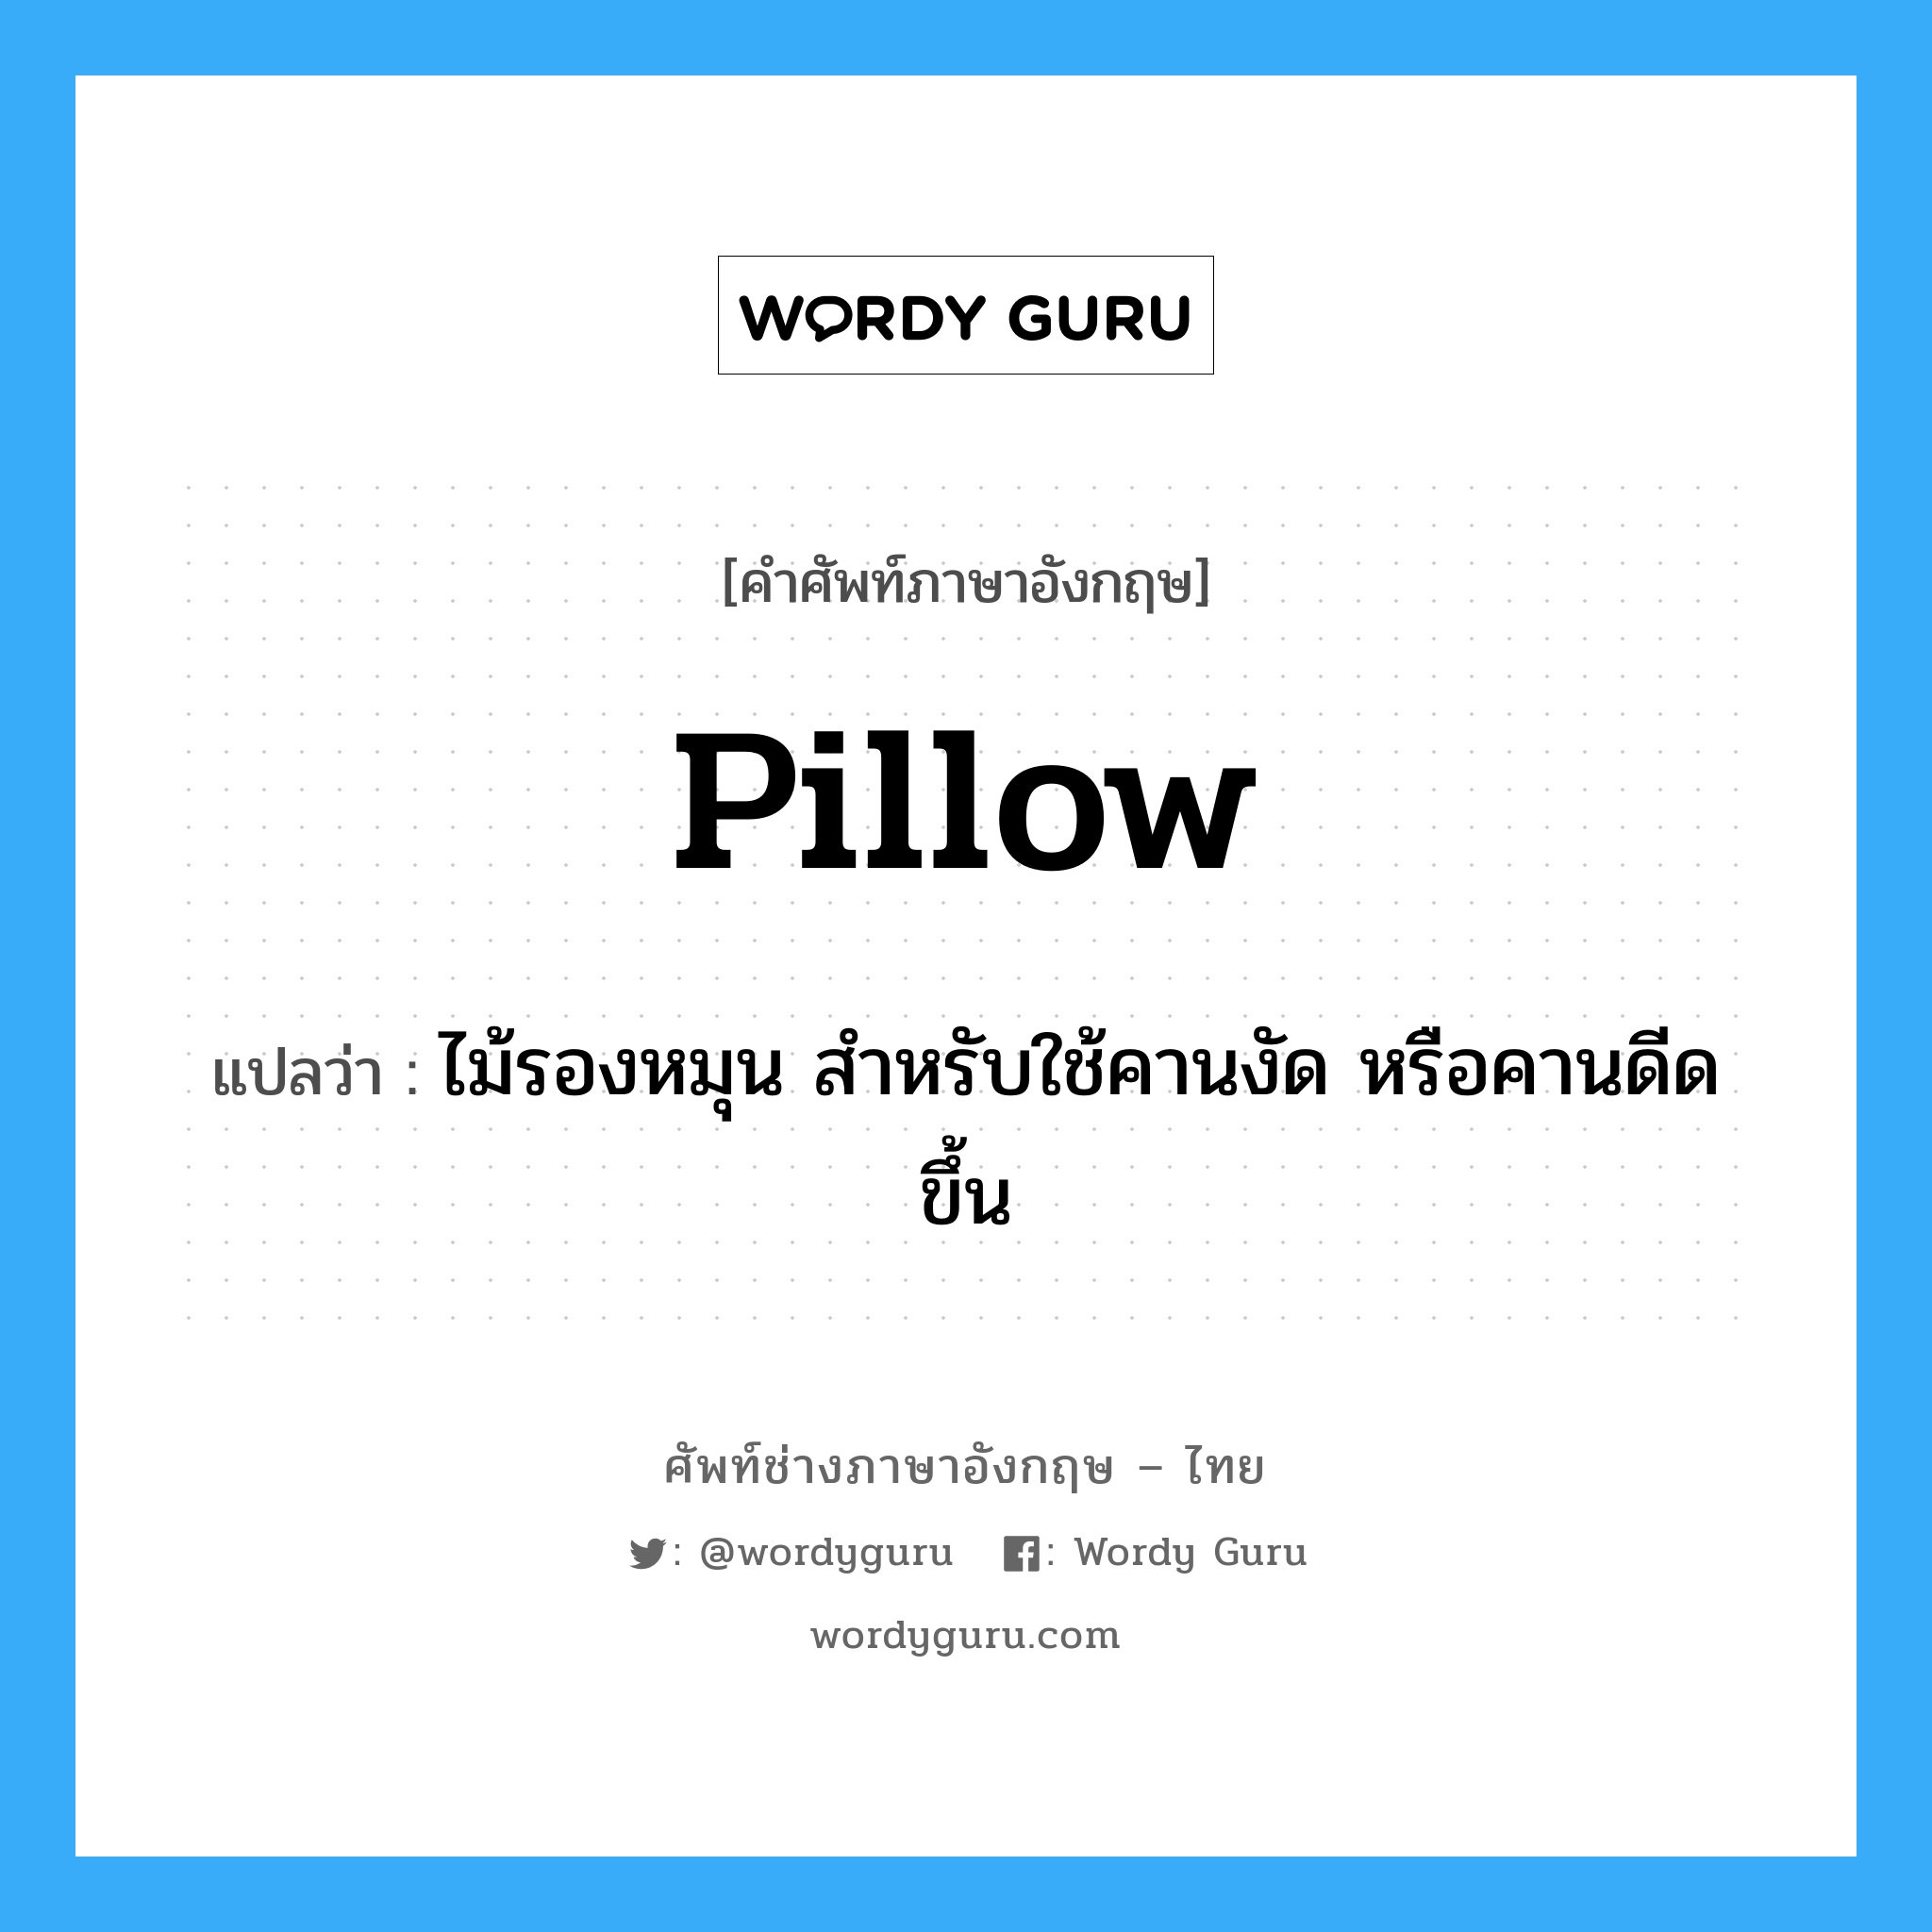 Pillow แปลว่า?, คำศัพท์ช่างภาษาอังกฤษ - ไทย Pillow คำศัพท์ภาษาอังกฤษ Pillow แปลว่า ไม้รองหมุน สำหรับใช้คานงัด หรือคานดีดขึ้น